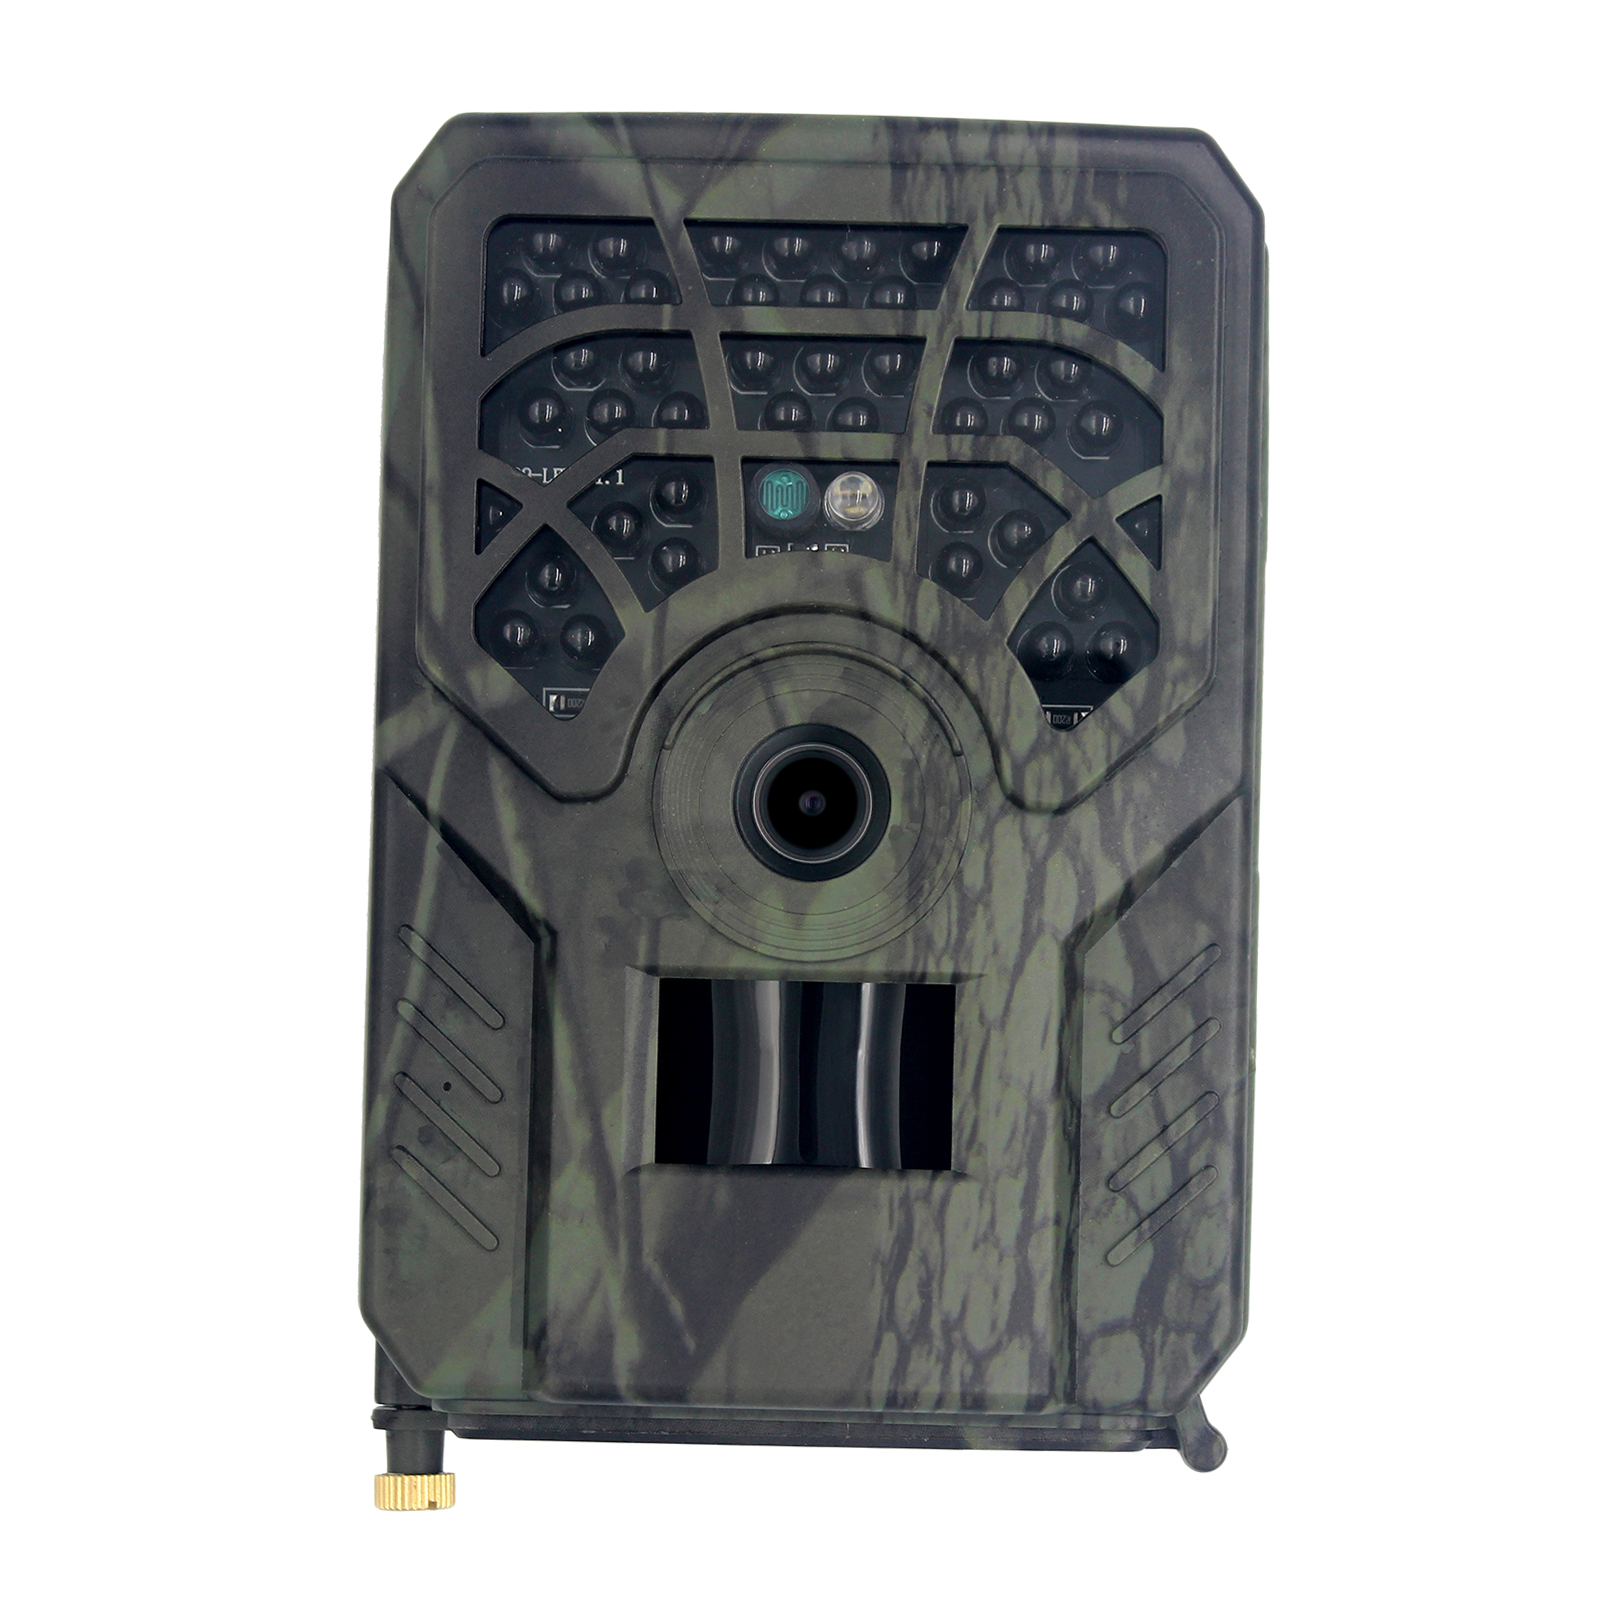 Yükseltme PR-300C Trail Kamera 720p Gece Görüşü IP54 Water Water Wildlife 120 ° geniş açılı lens perakende kutusu